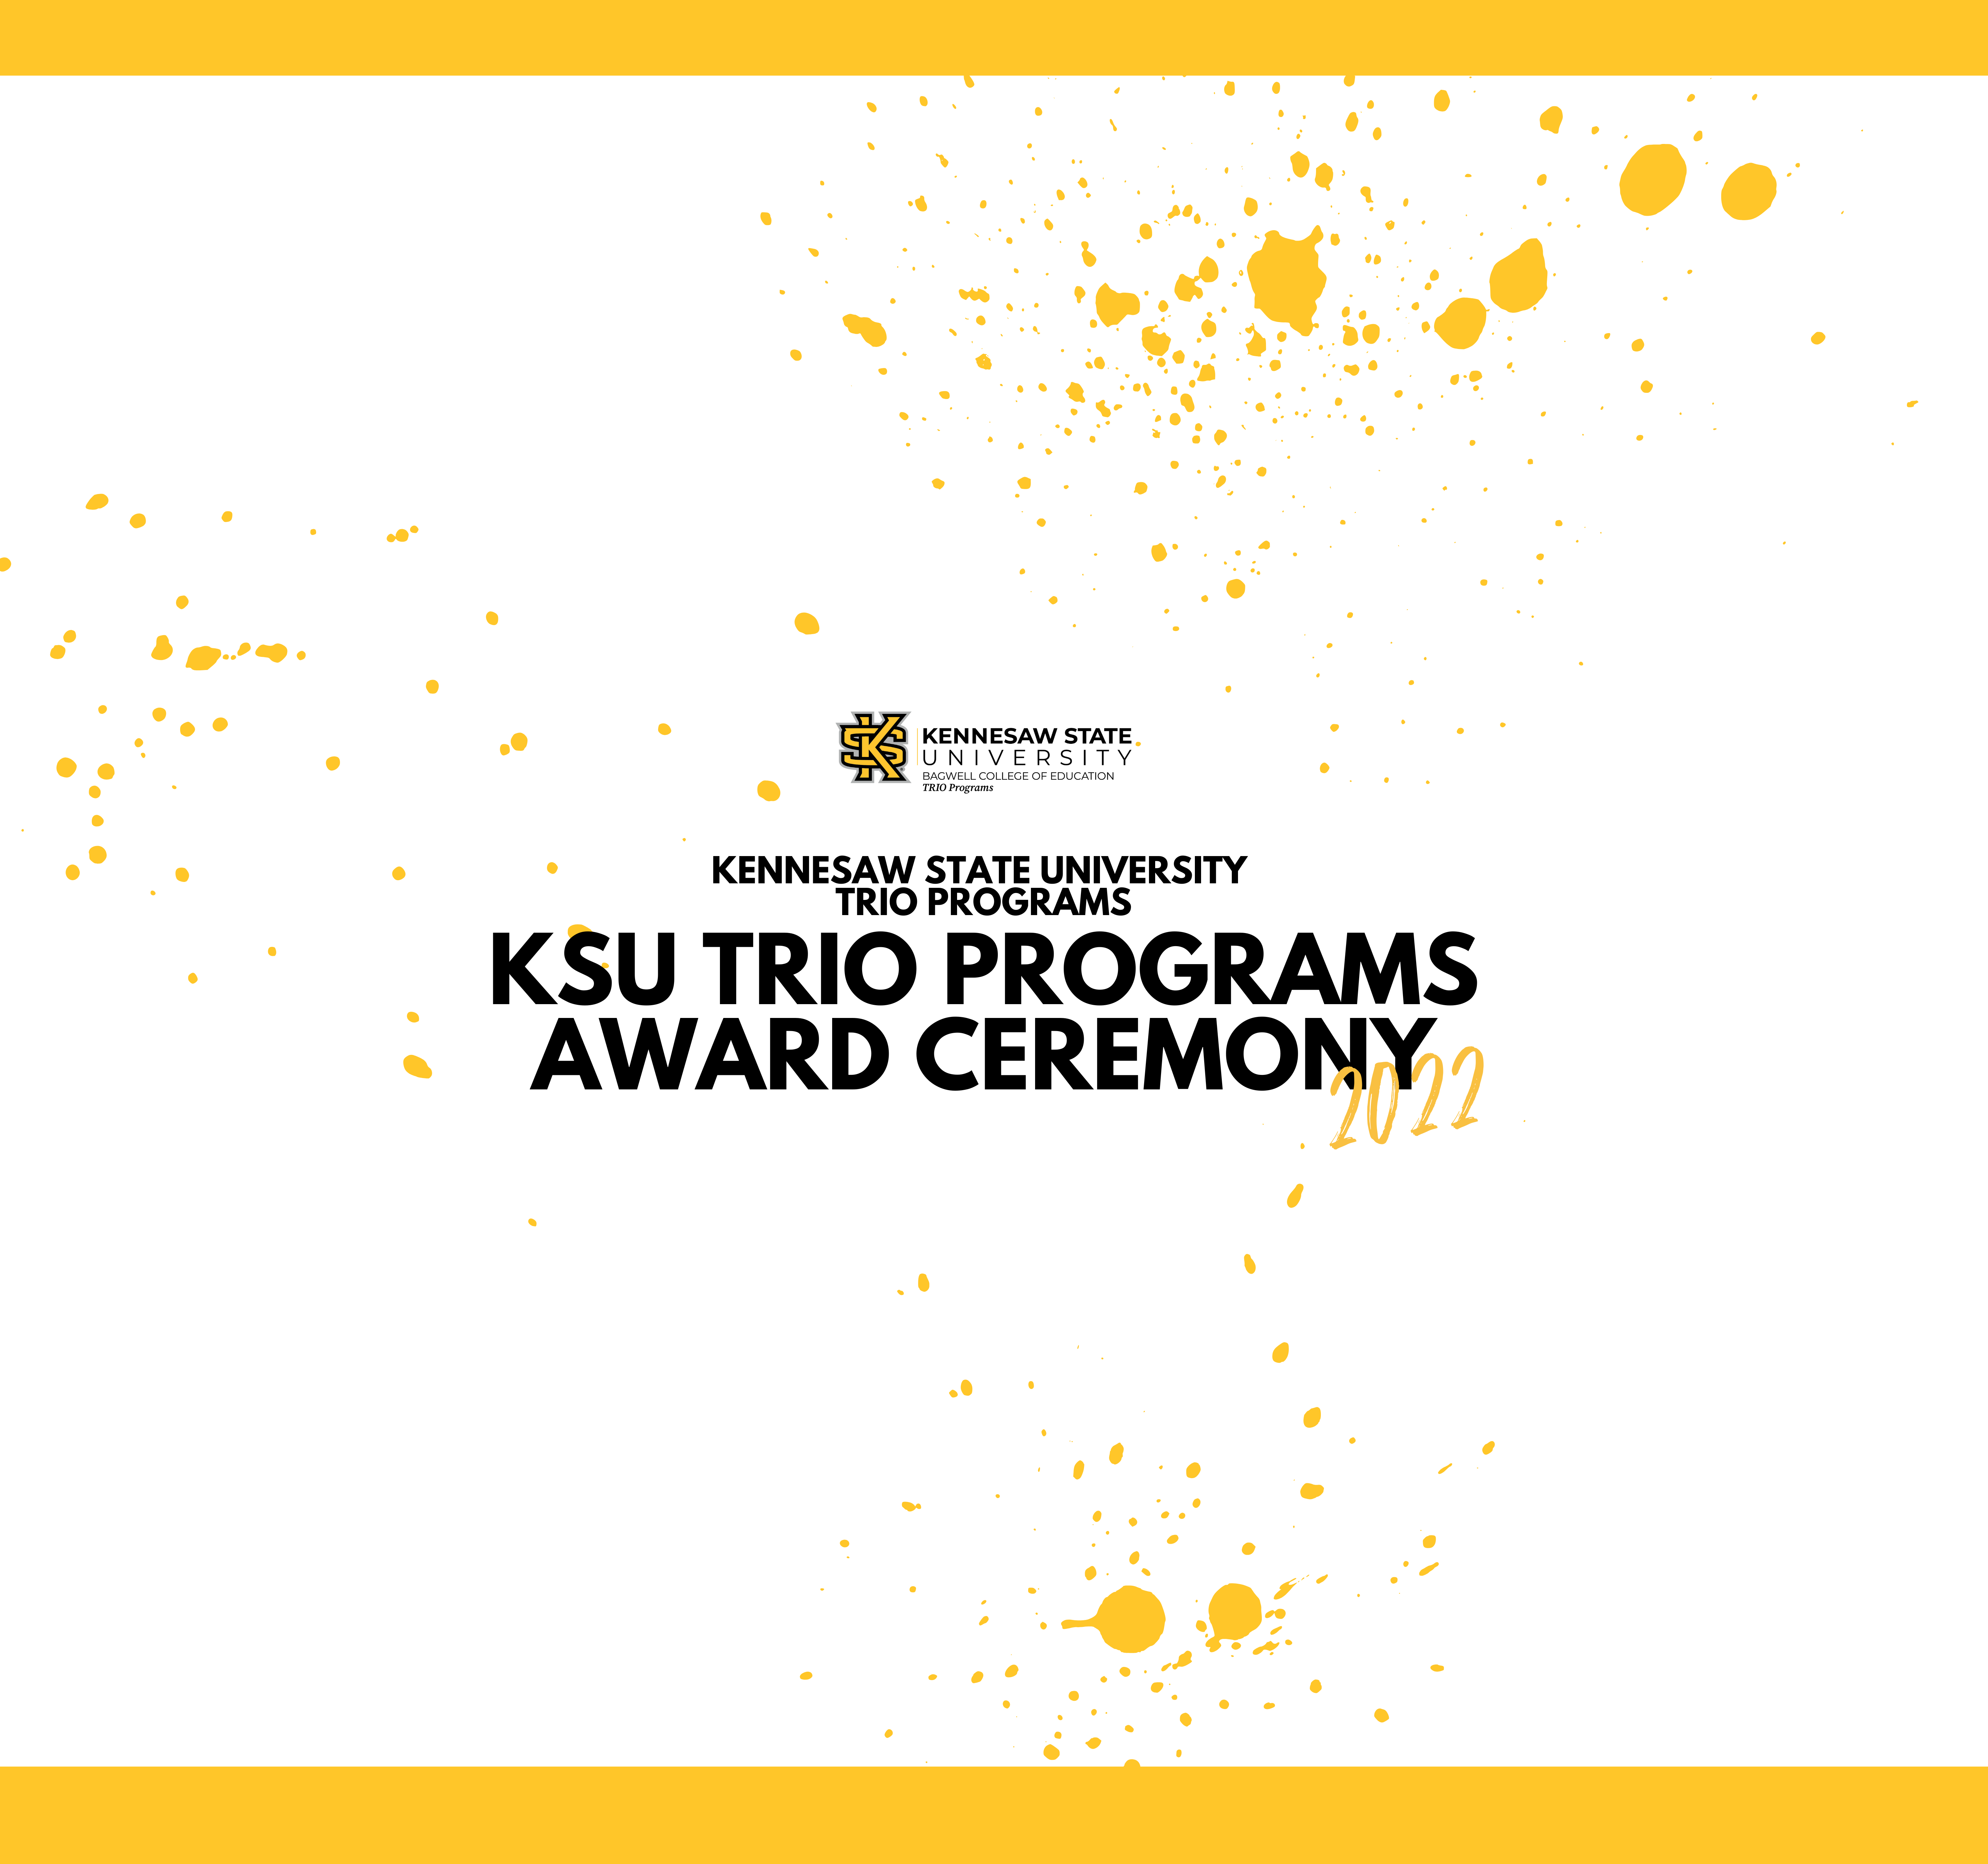 KSU TRIO Senior Signing Event and Award Ceremony 2022